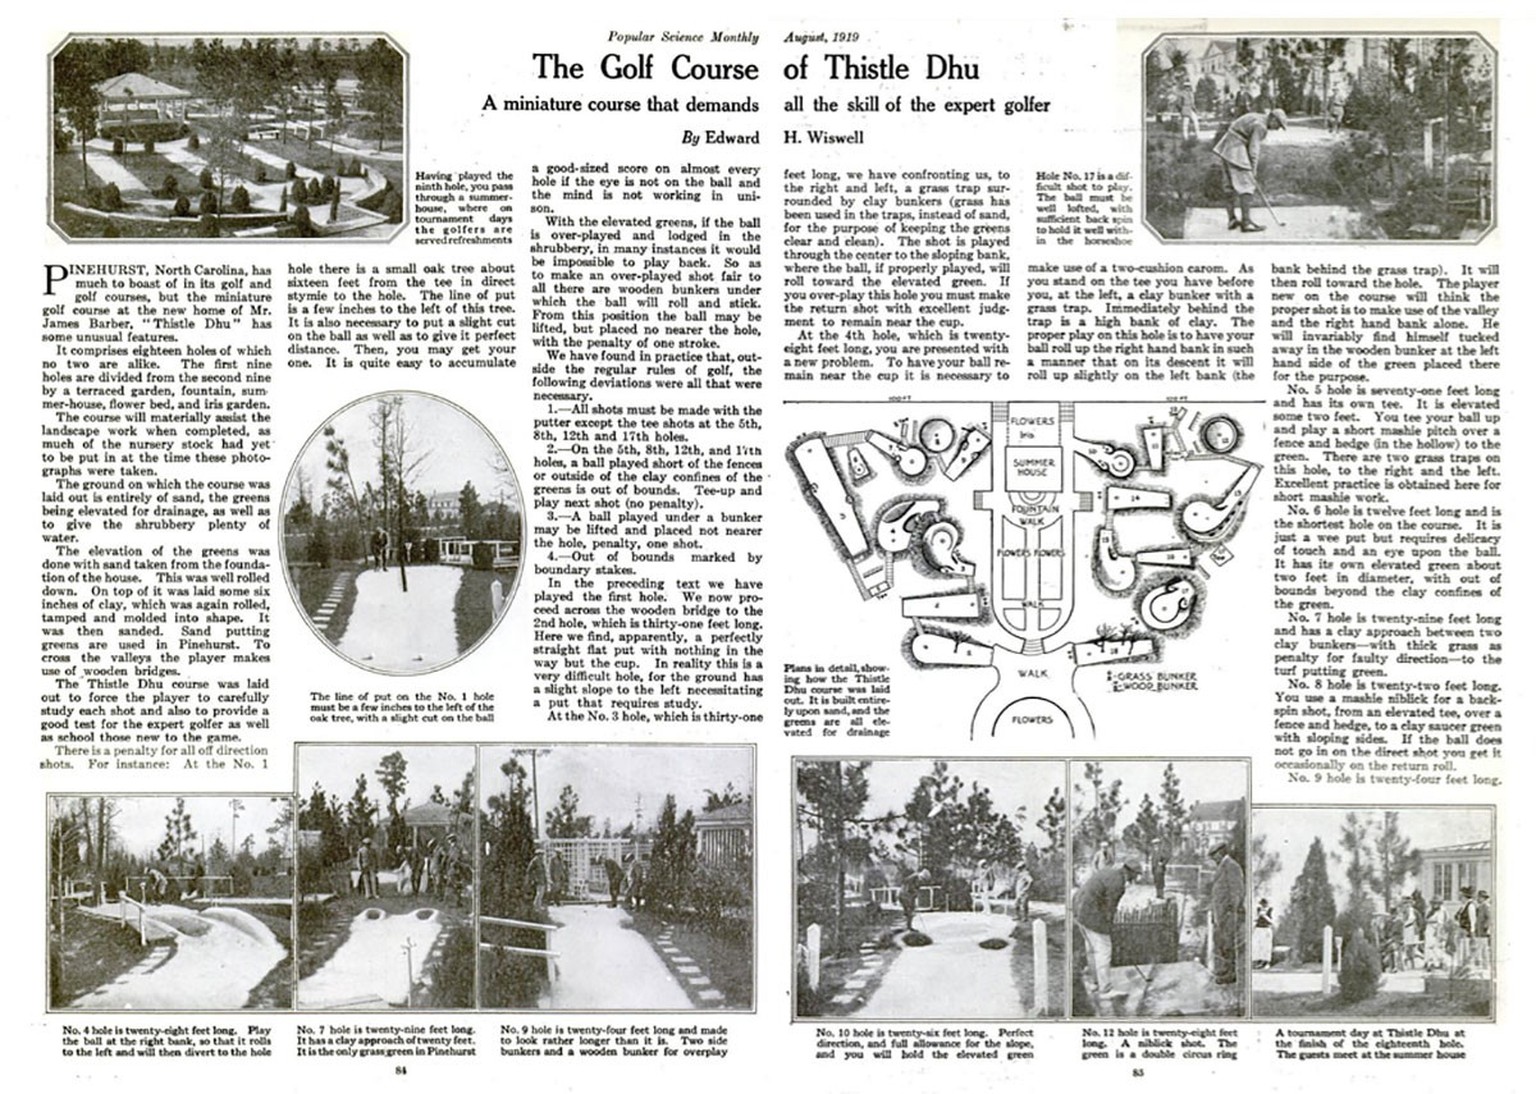 1919 widmete die Zeitschrift «Popular Science» der Mini-Golf-Anlage von James Wells Barbers eine Doppelseite. https://books.google.fm/books?id=FykDAAAAMBAJ&amp;printsec=frontcover#v=onepage&amp;q&amp; ...